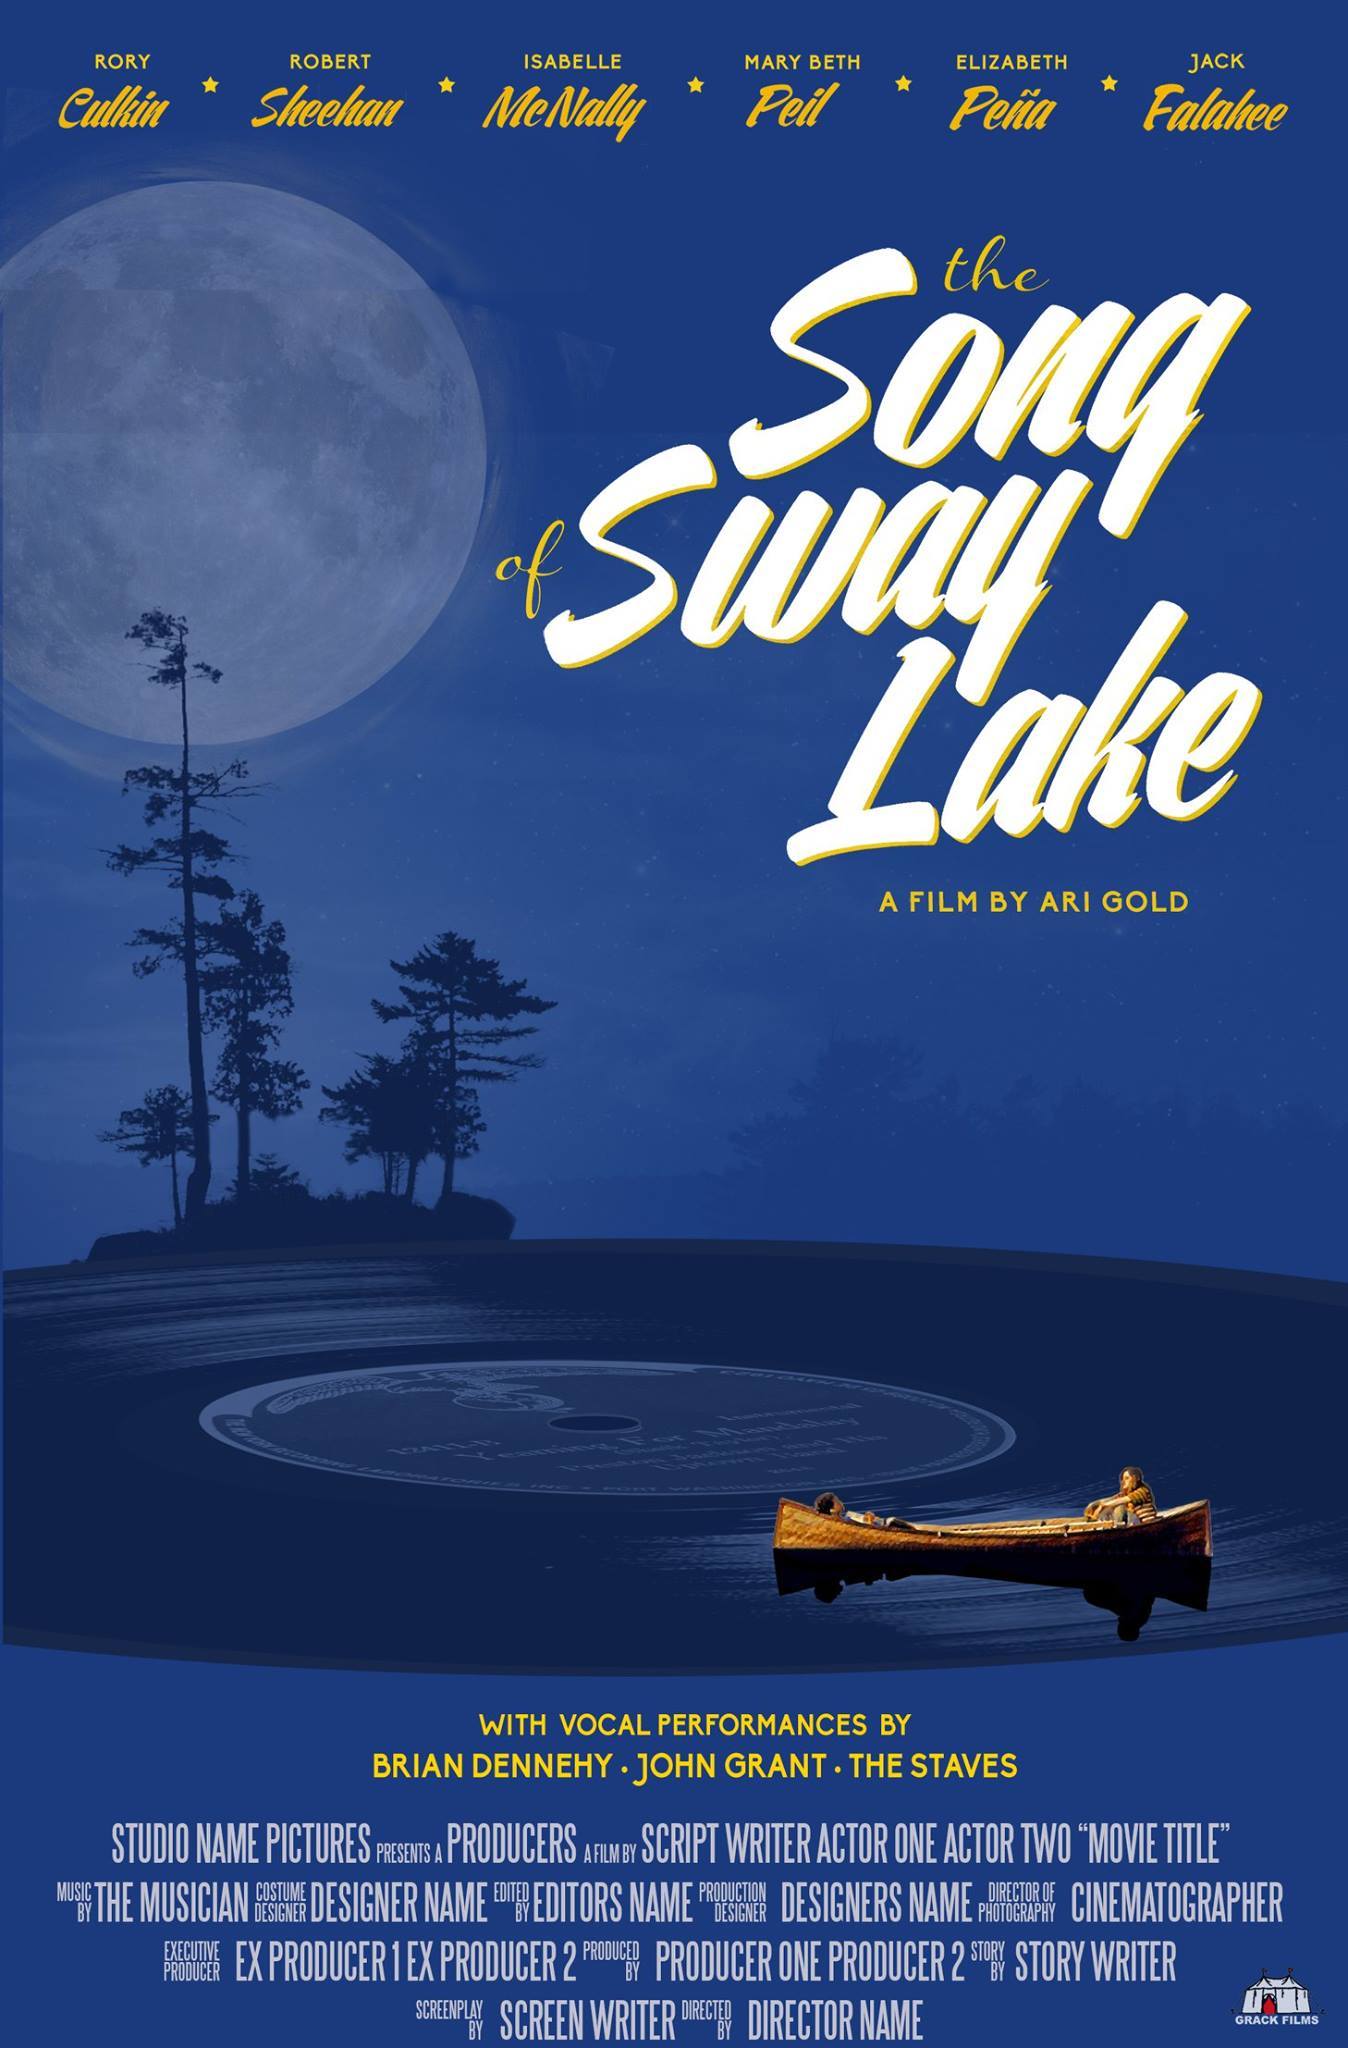 Song of Sway Lake